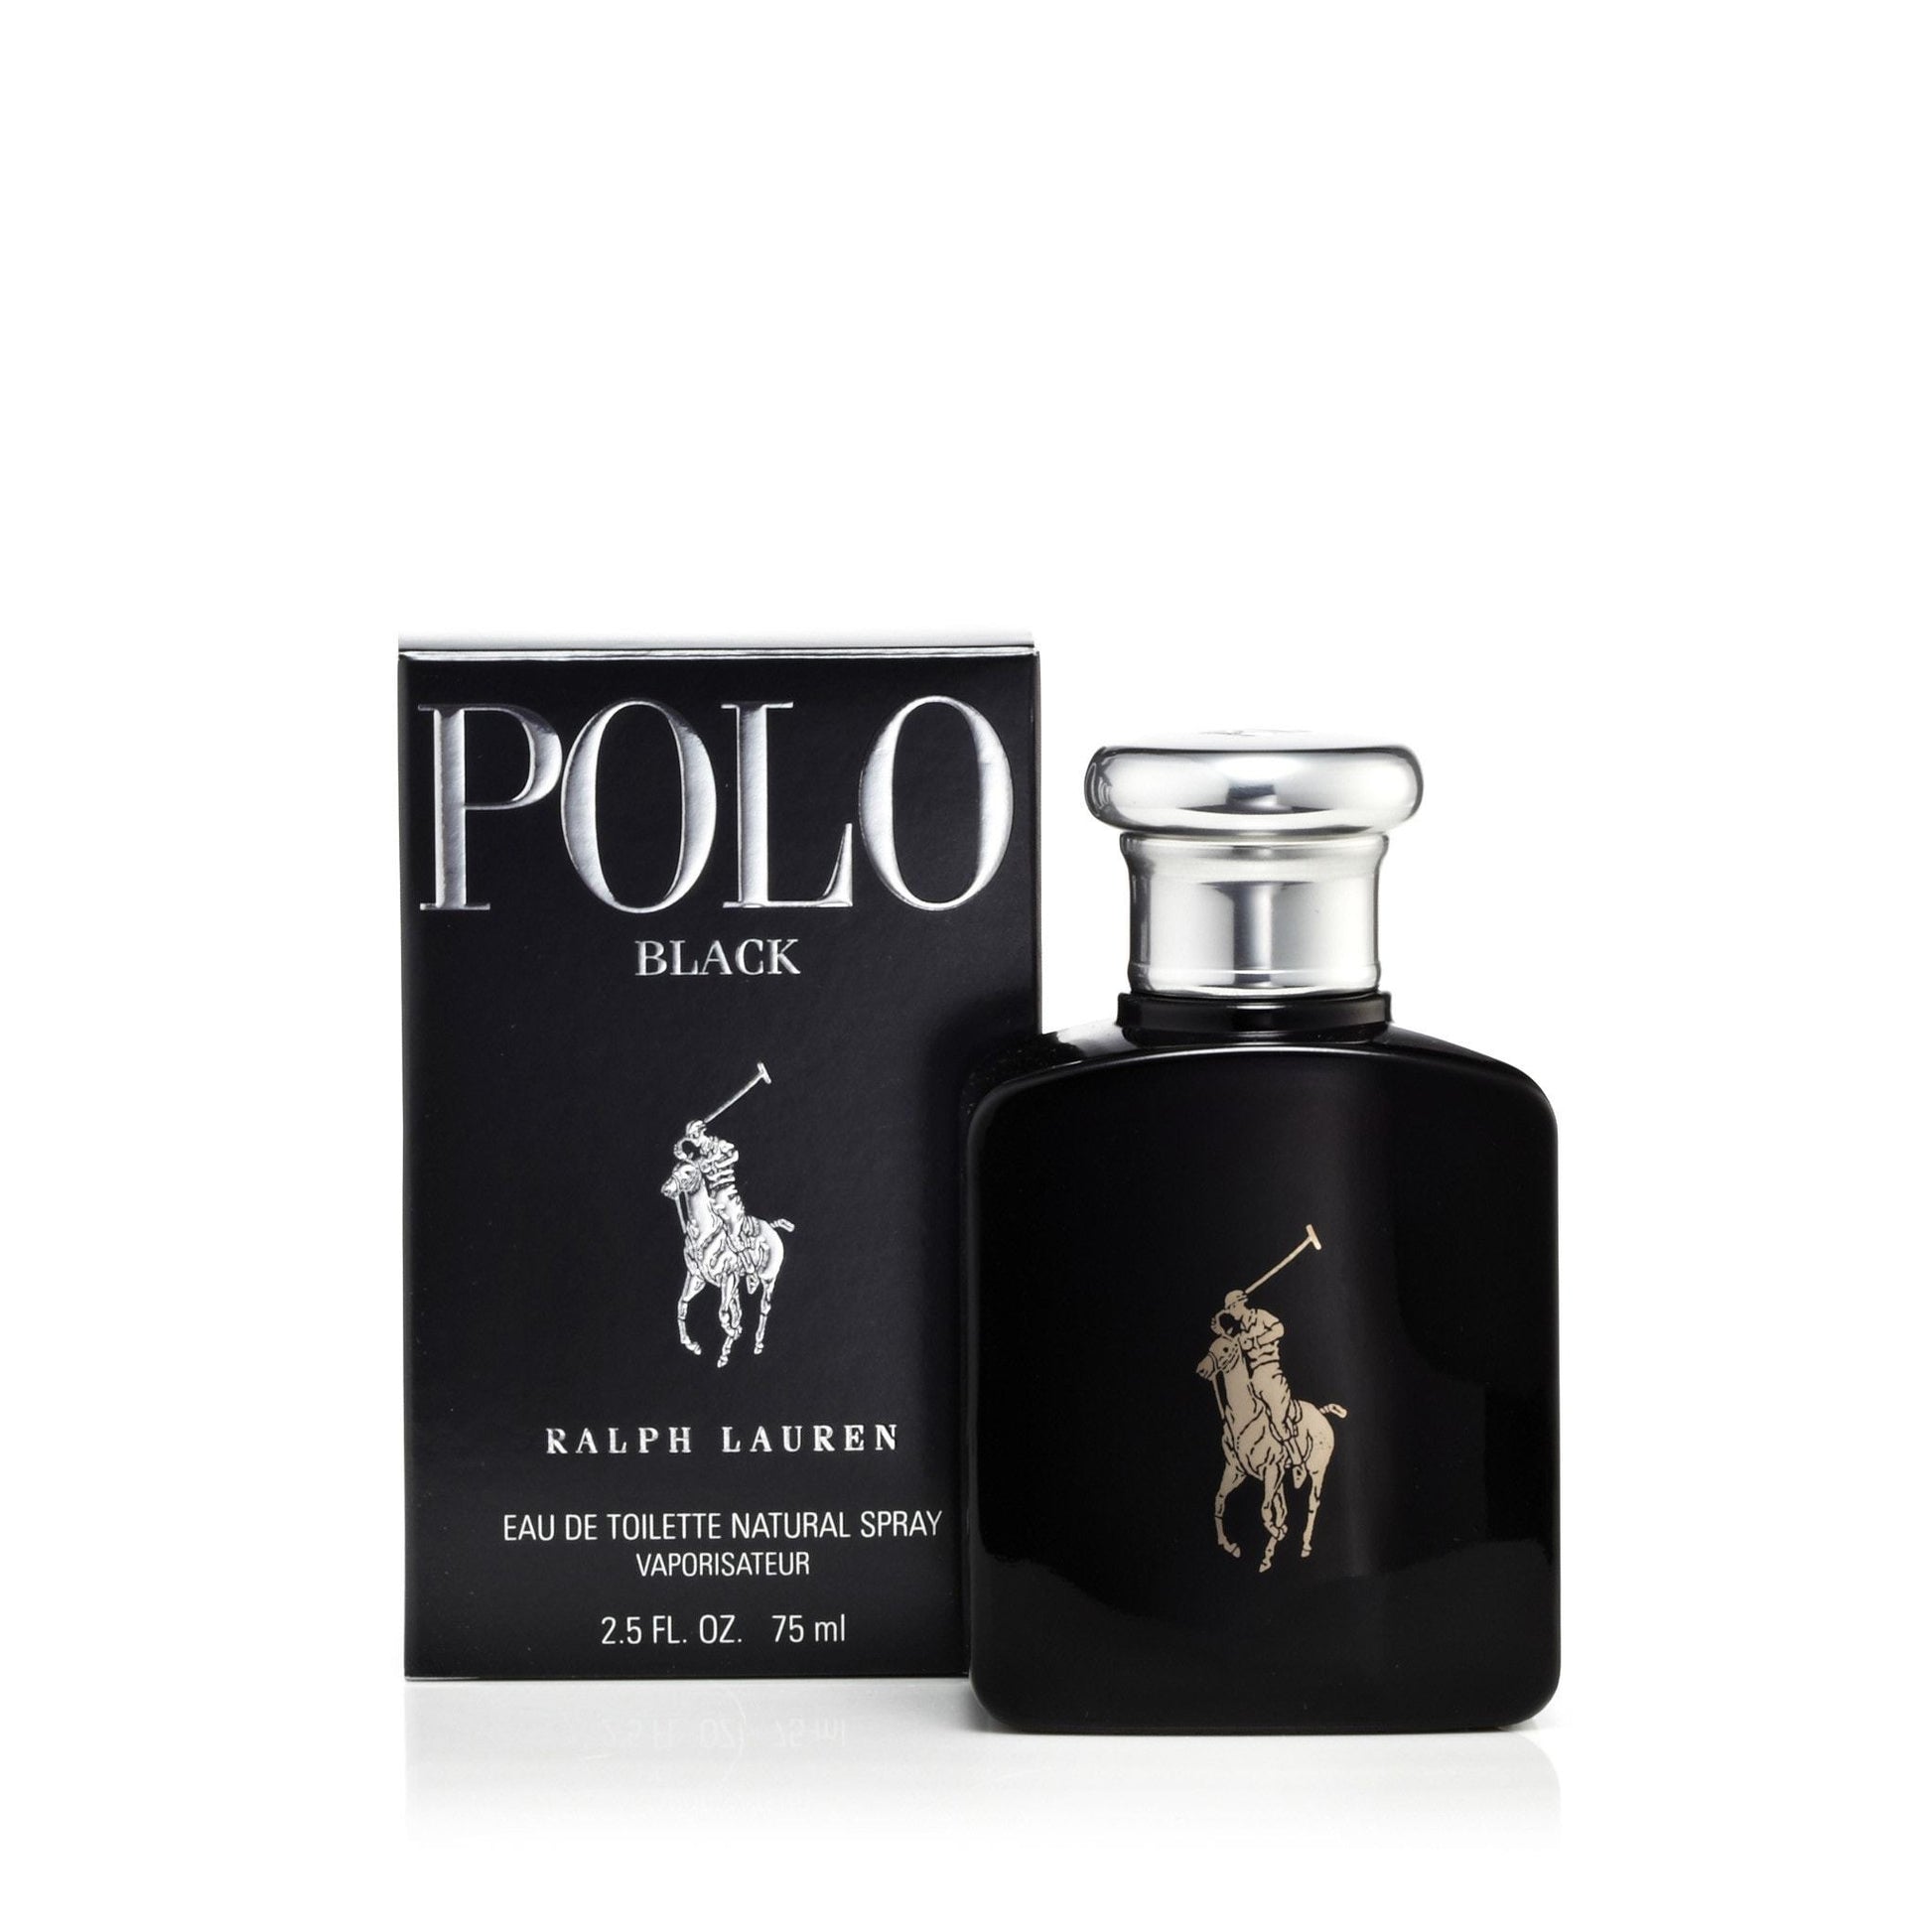 Polo Black Eau de Toilette Spray for Men by Ralph Lauren, Product image 8